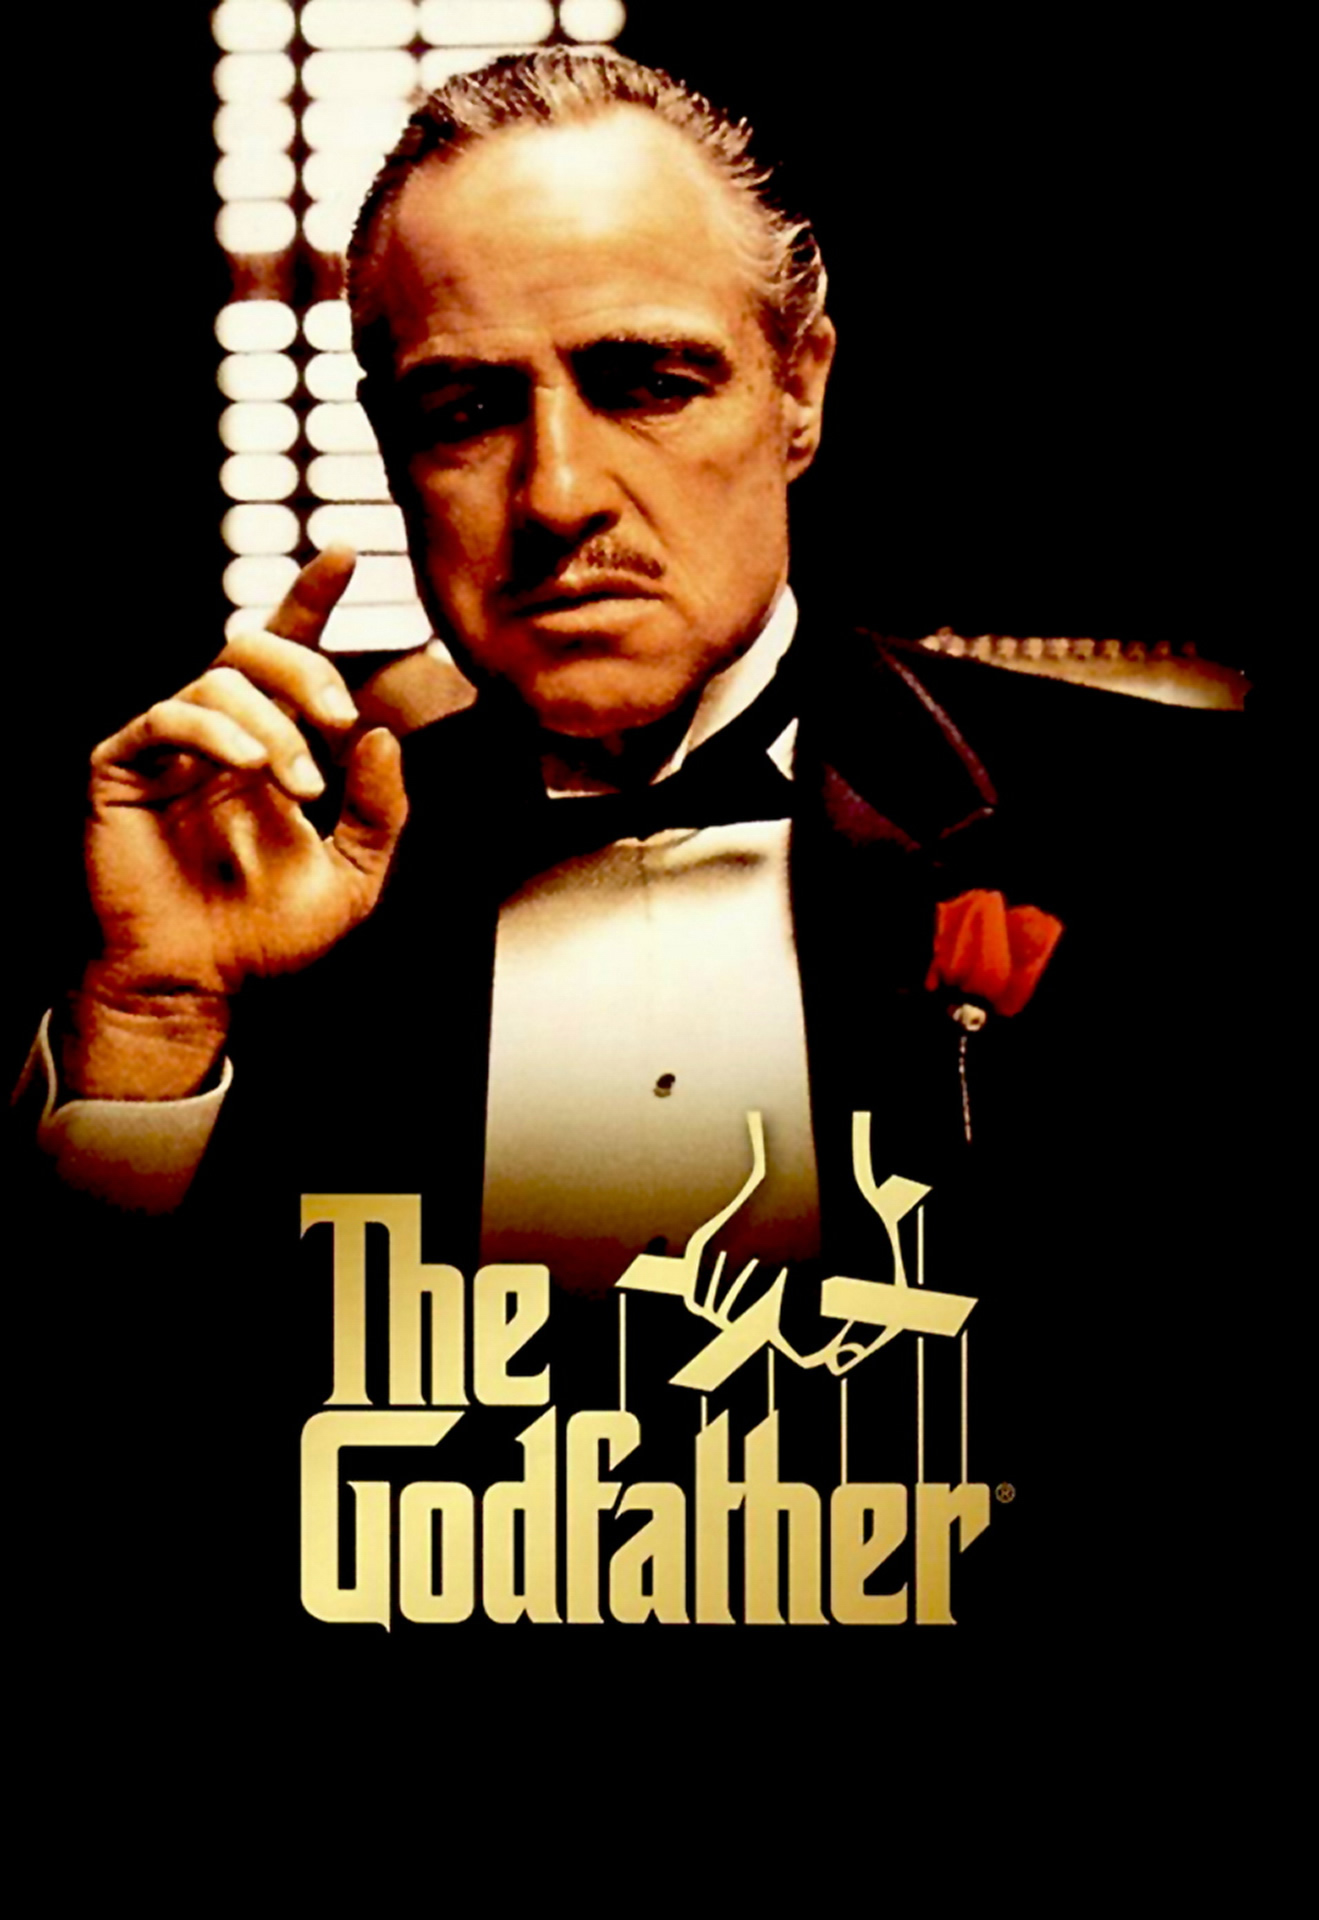 godfather 2 filmi